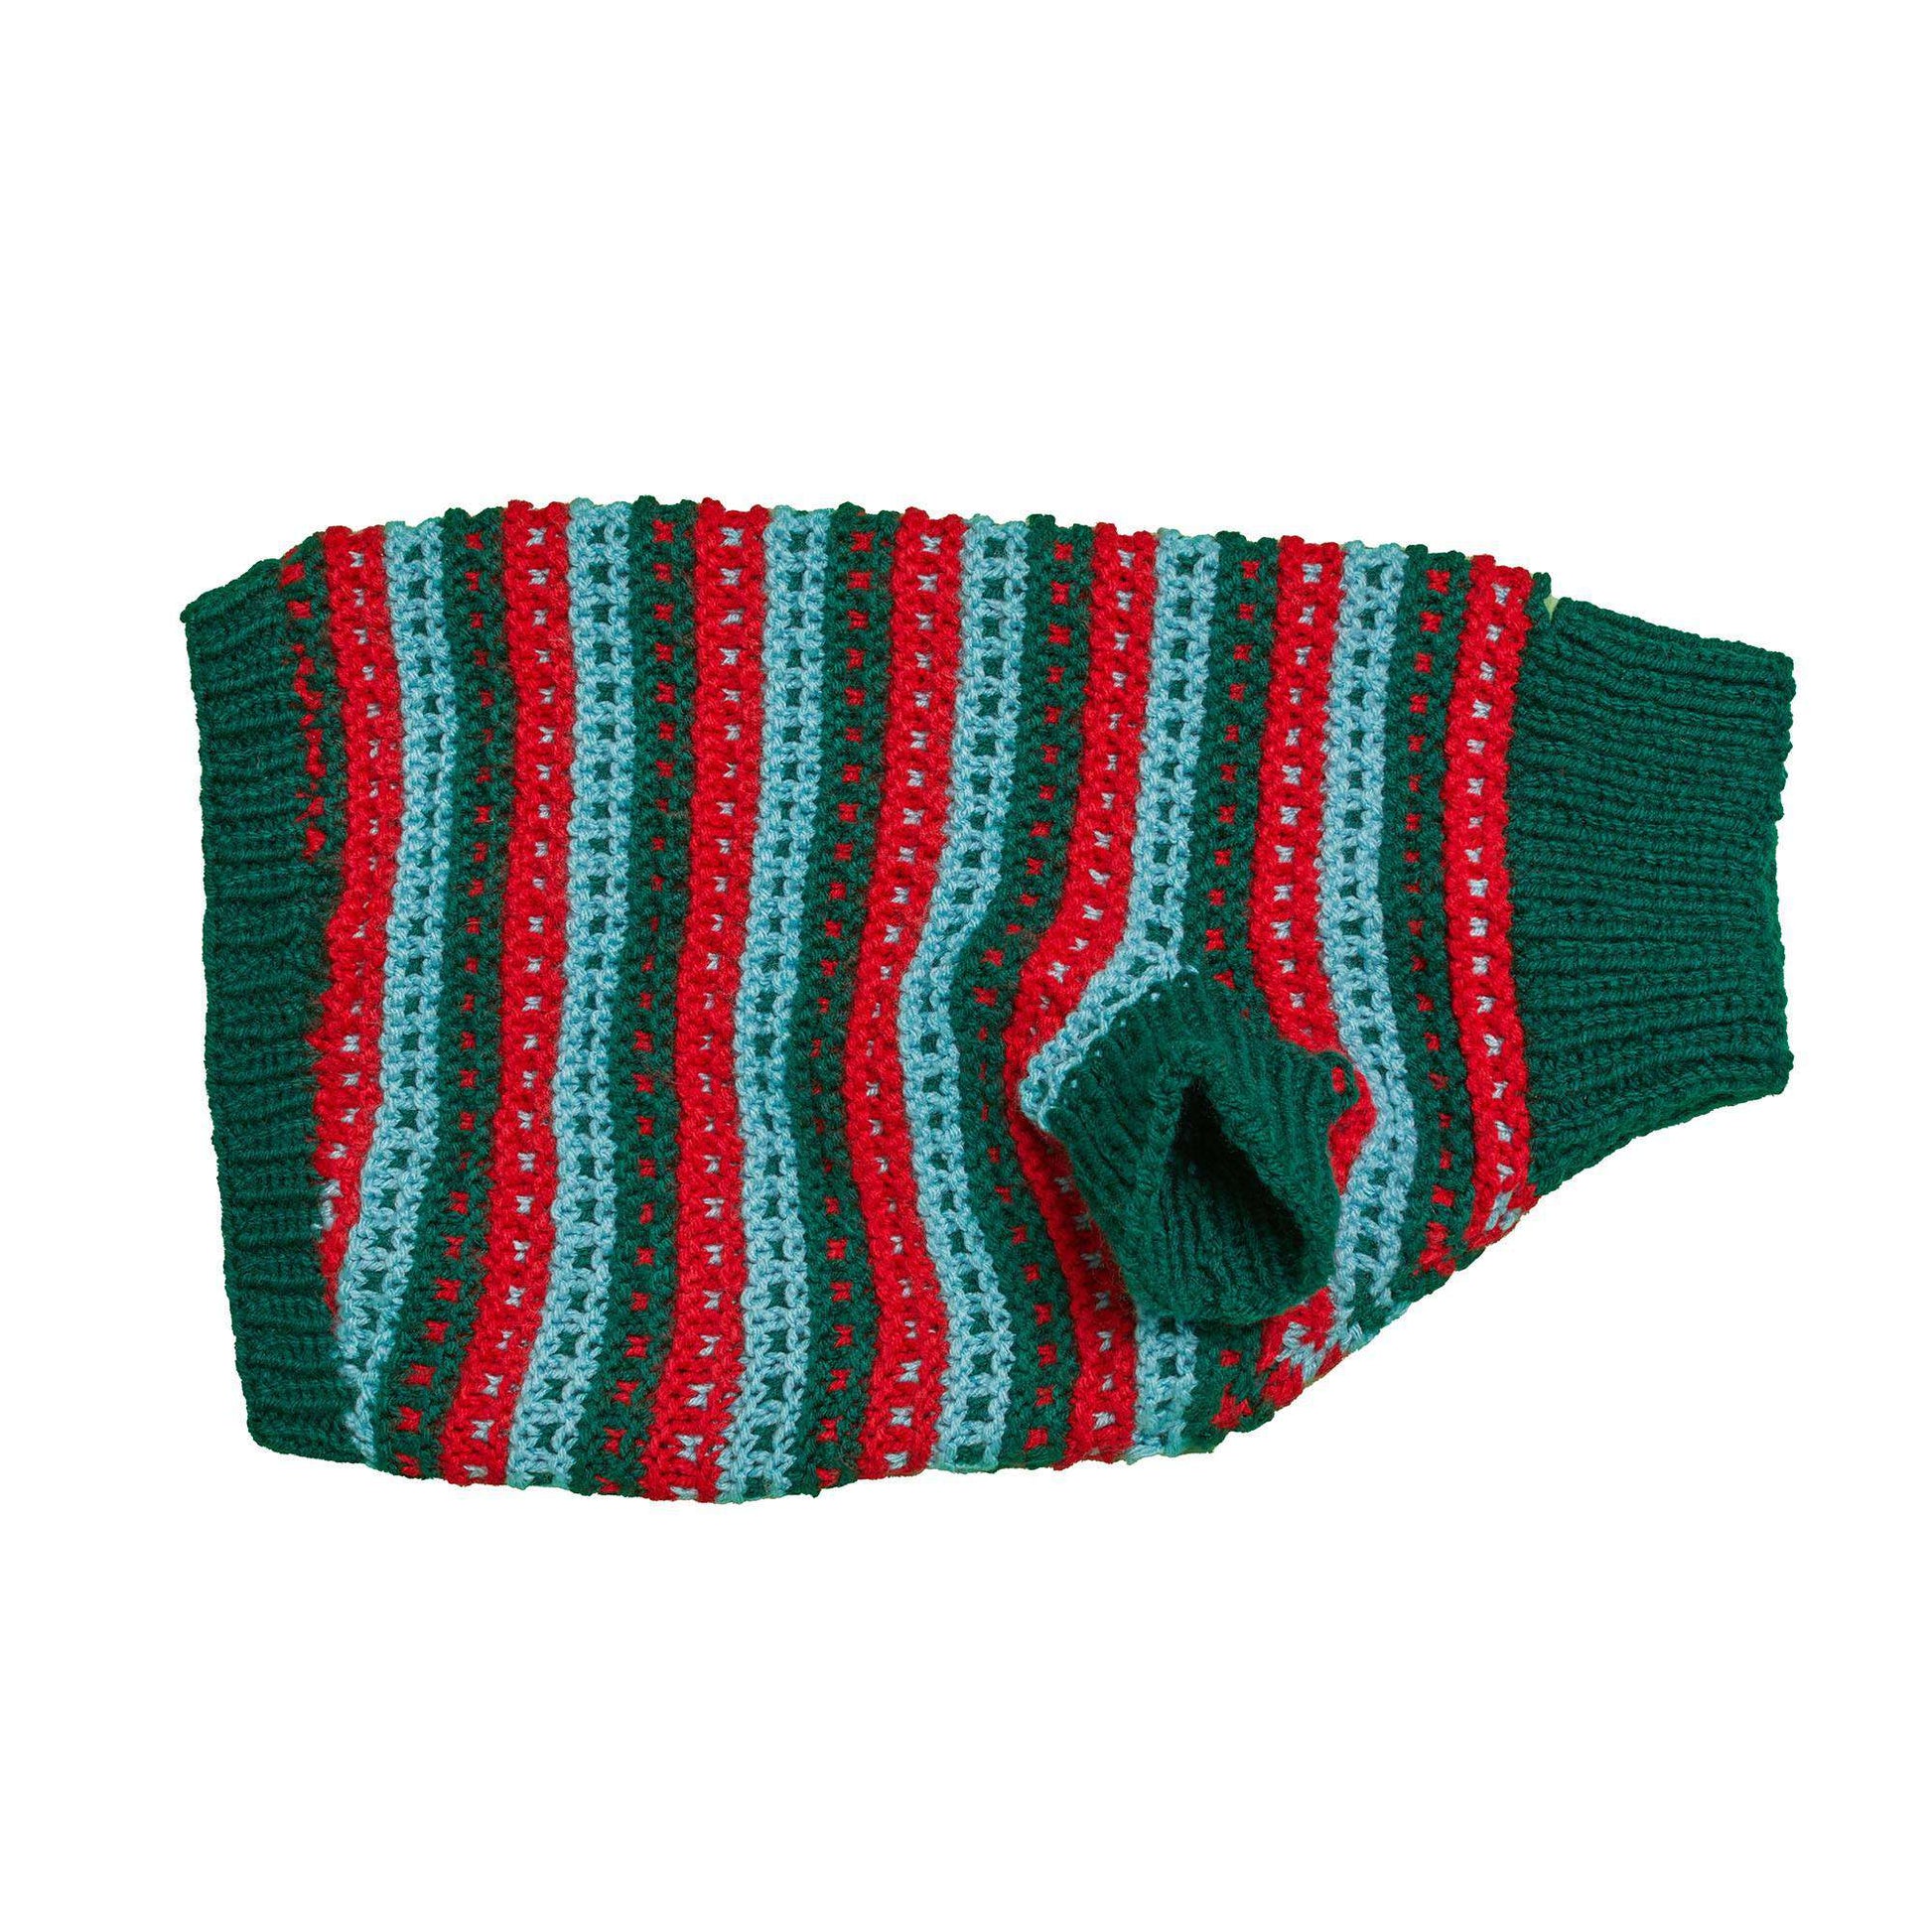 Free Red Heart Stylish Knit Dog Sweater Pattern